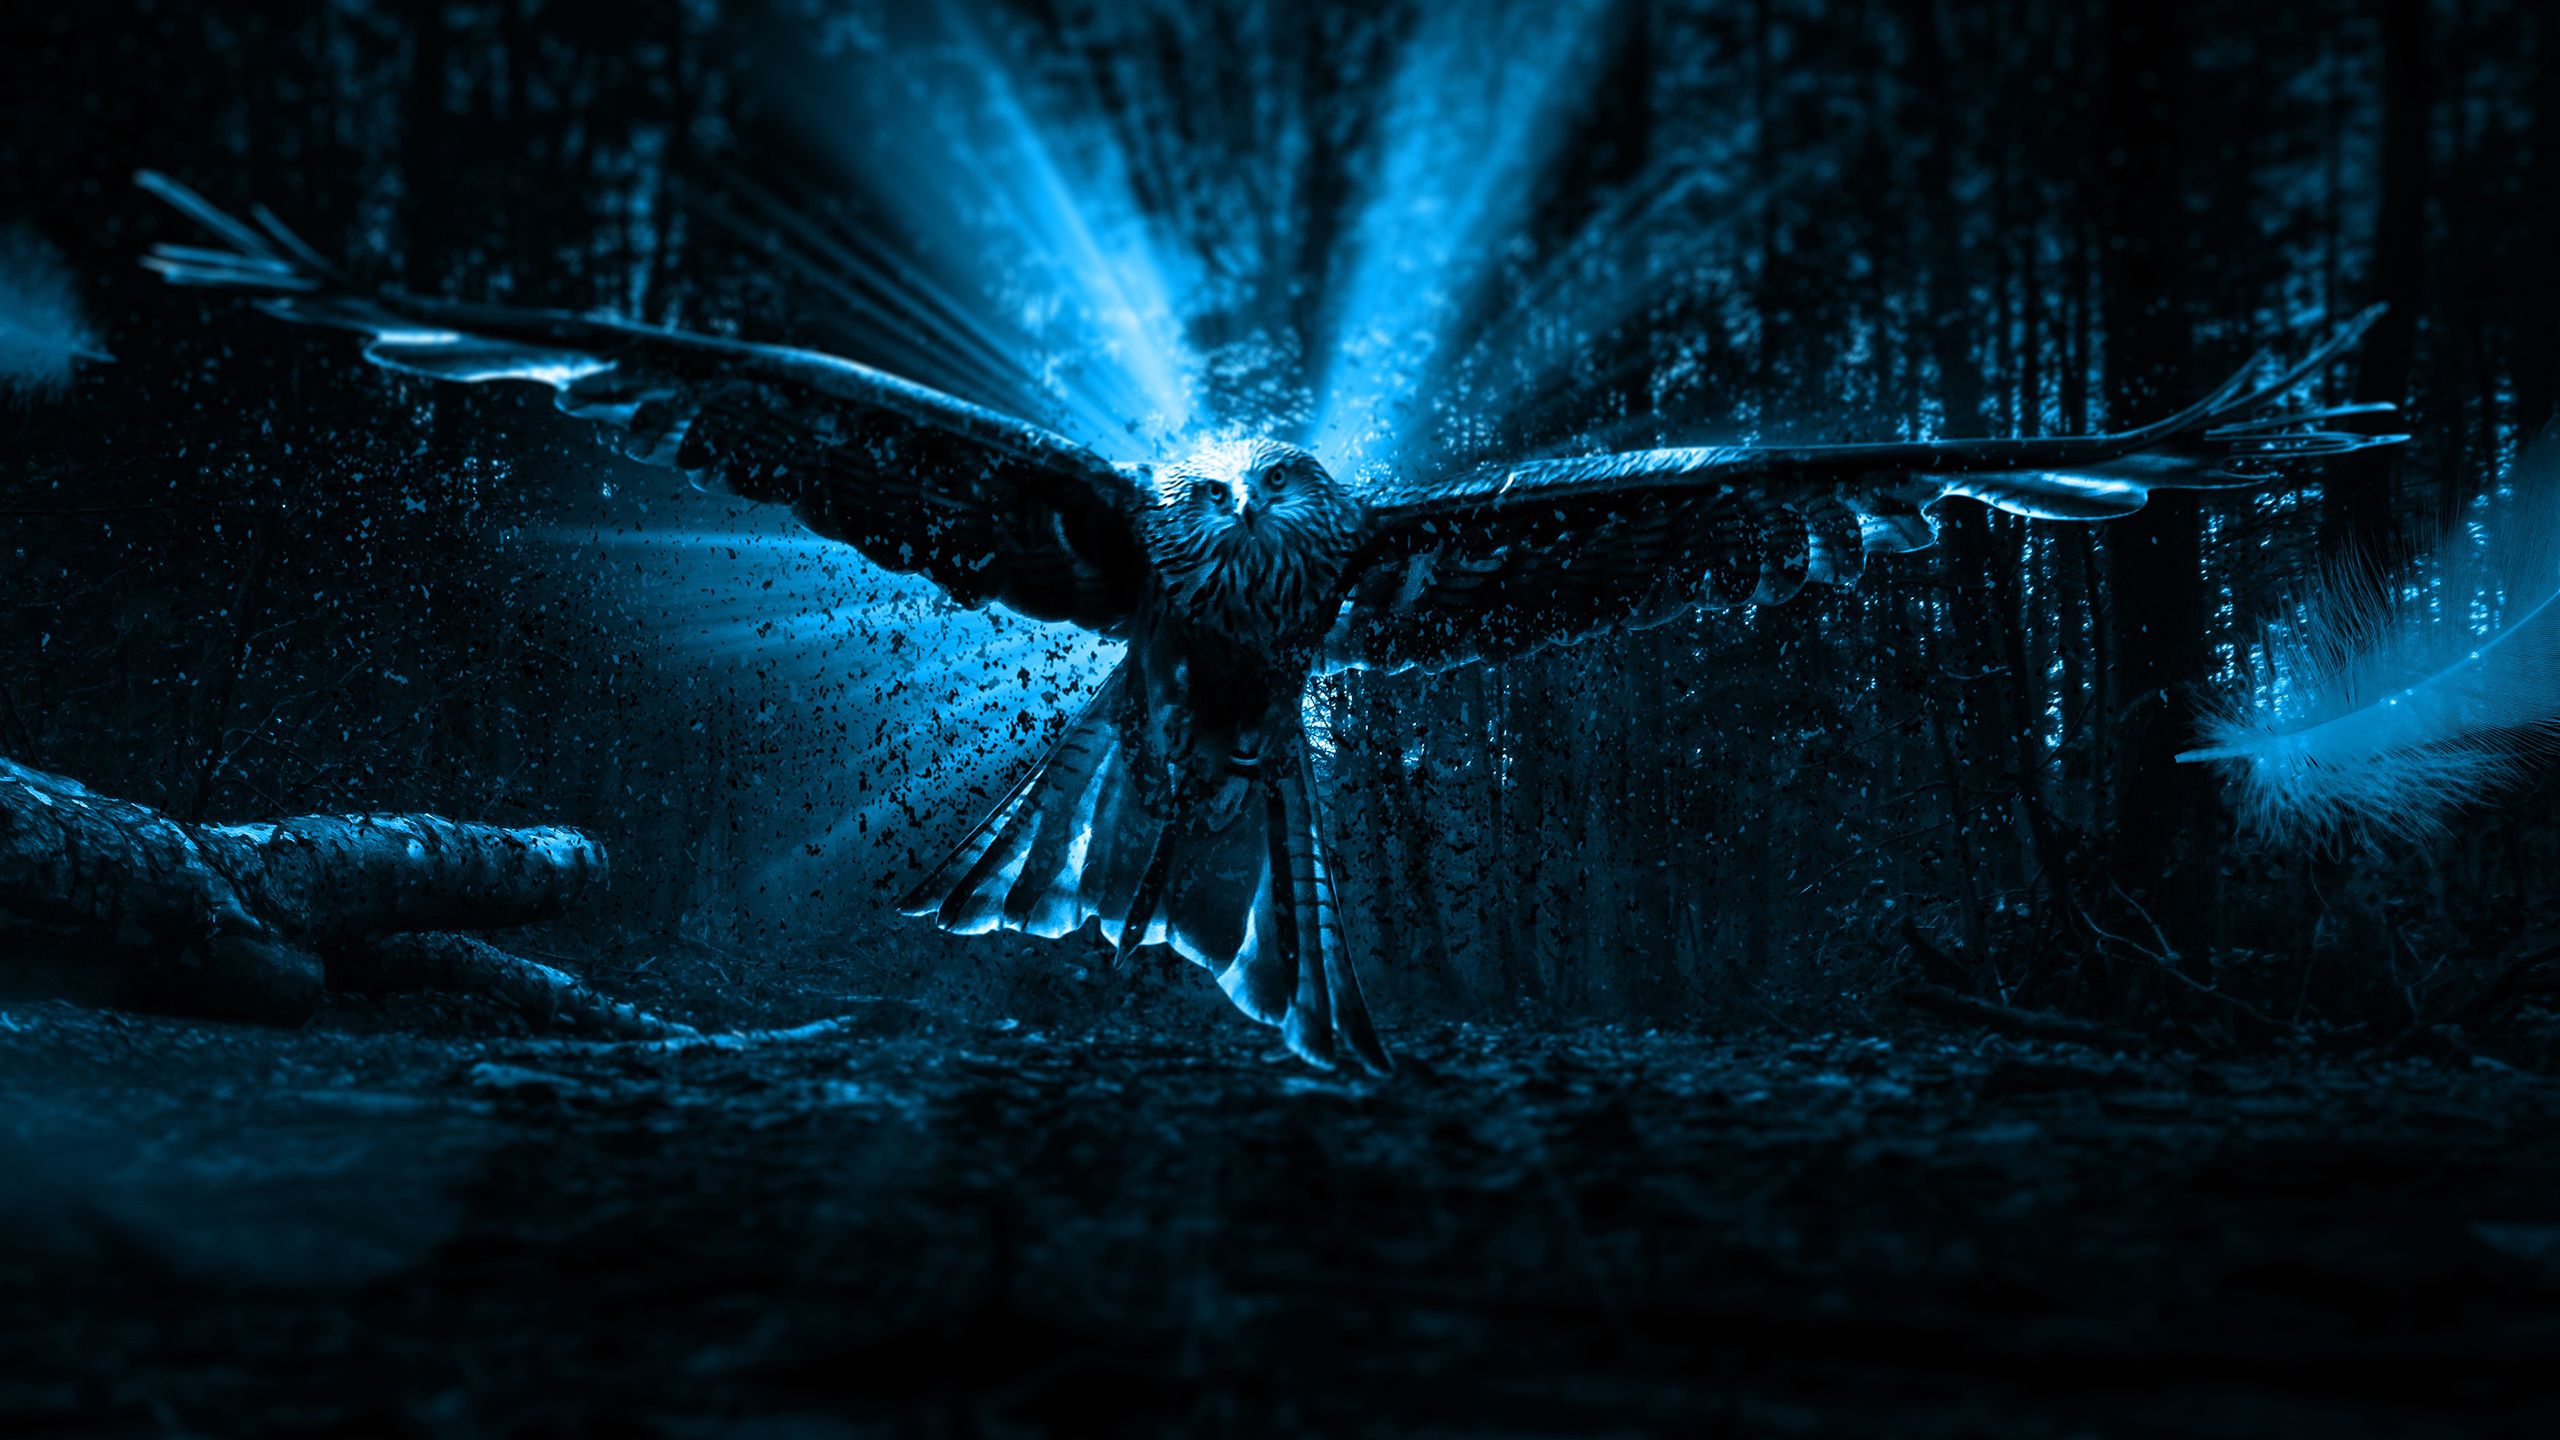  Adler Hintergrundbild 2560x1440. Adler Owl 2K Wallpaper x 1440 px